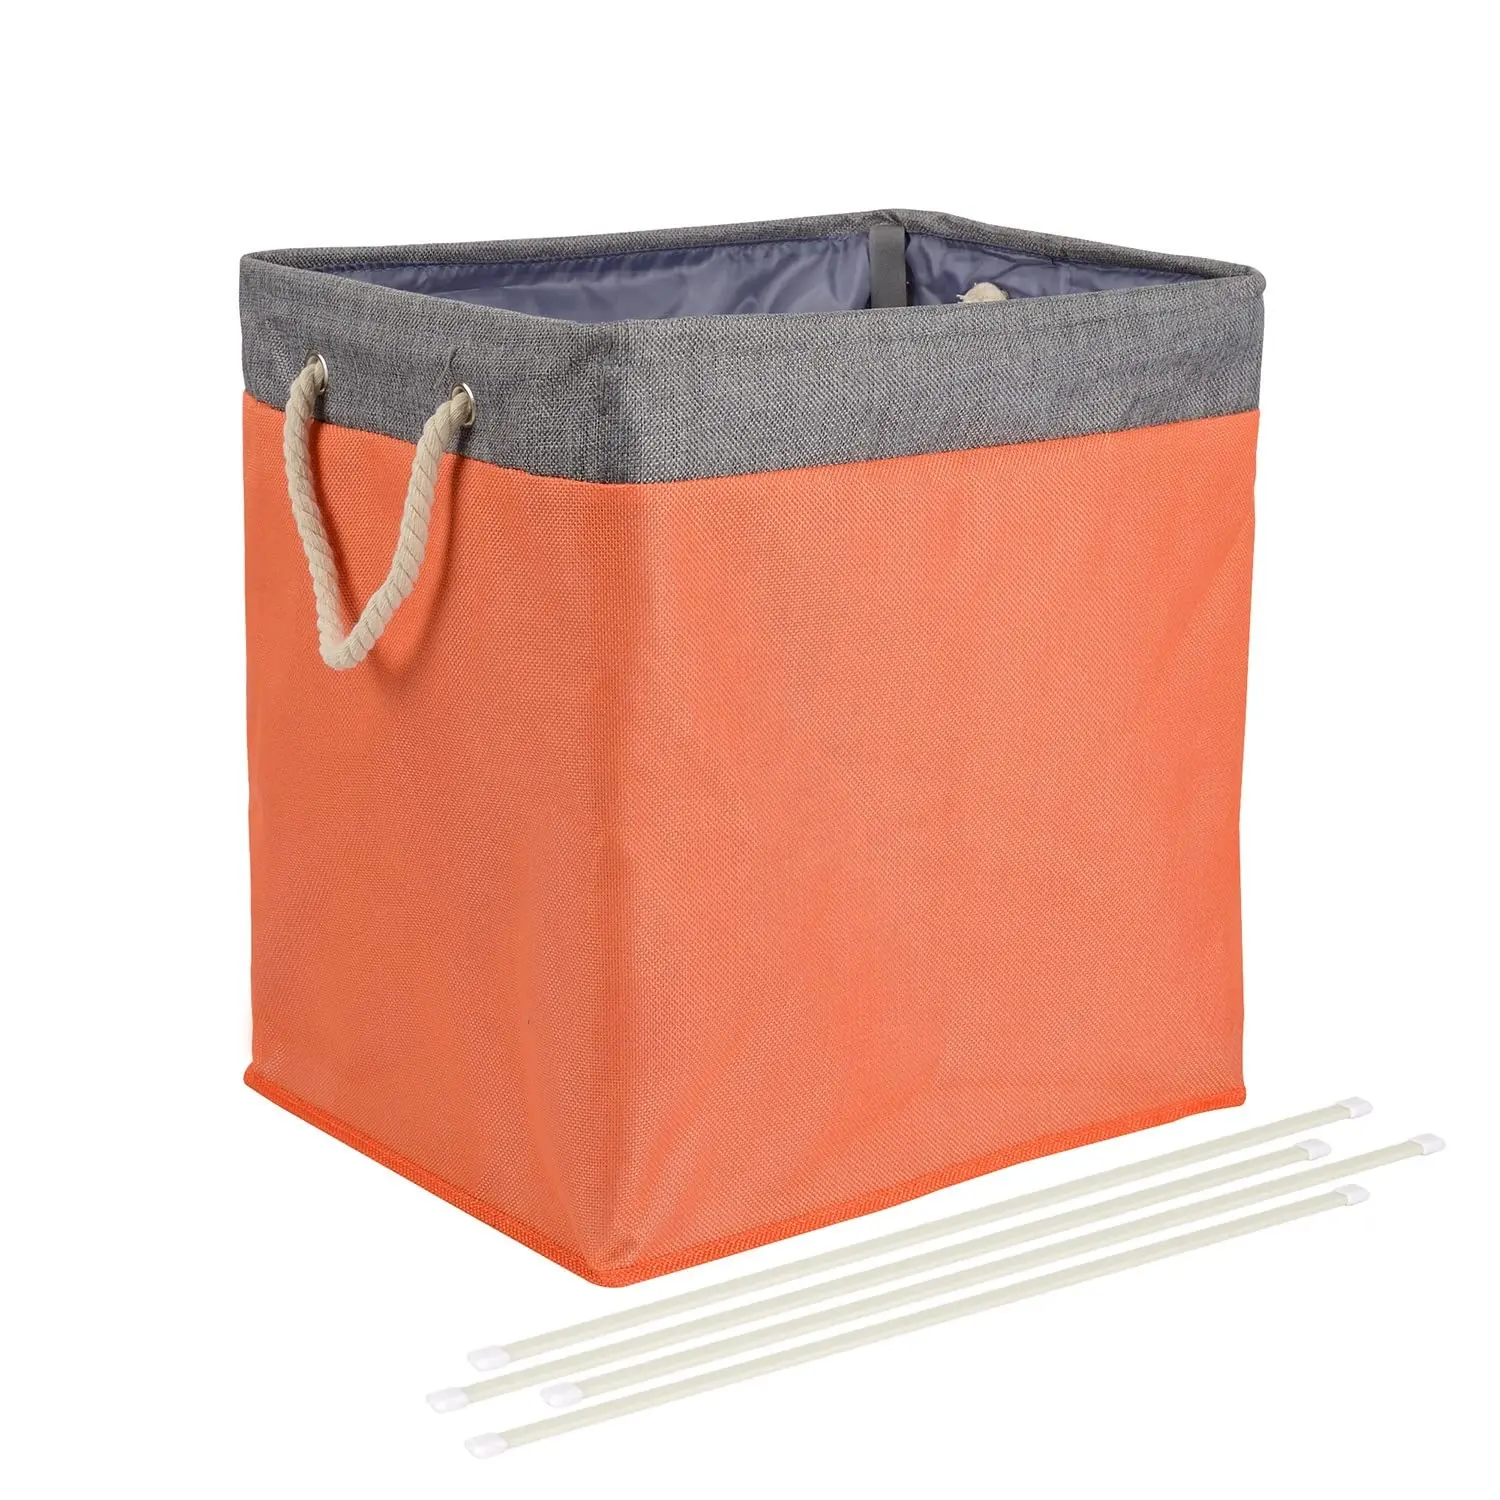 YA SHINE Wäsche körbe für die Aufbewahrung zu Hause Hochleistungs-Wäsche korb mit zusammen klappbaren Wäsche körben faltbar